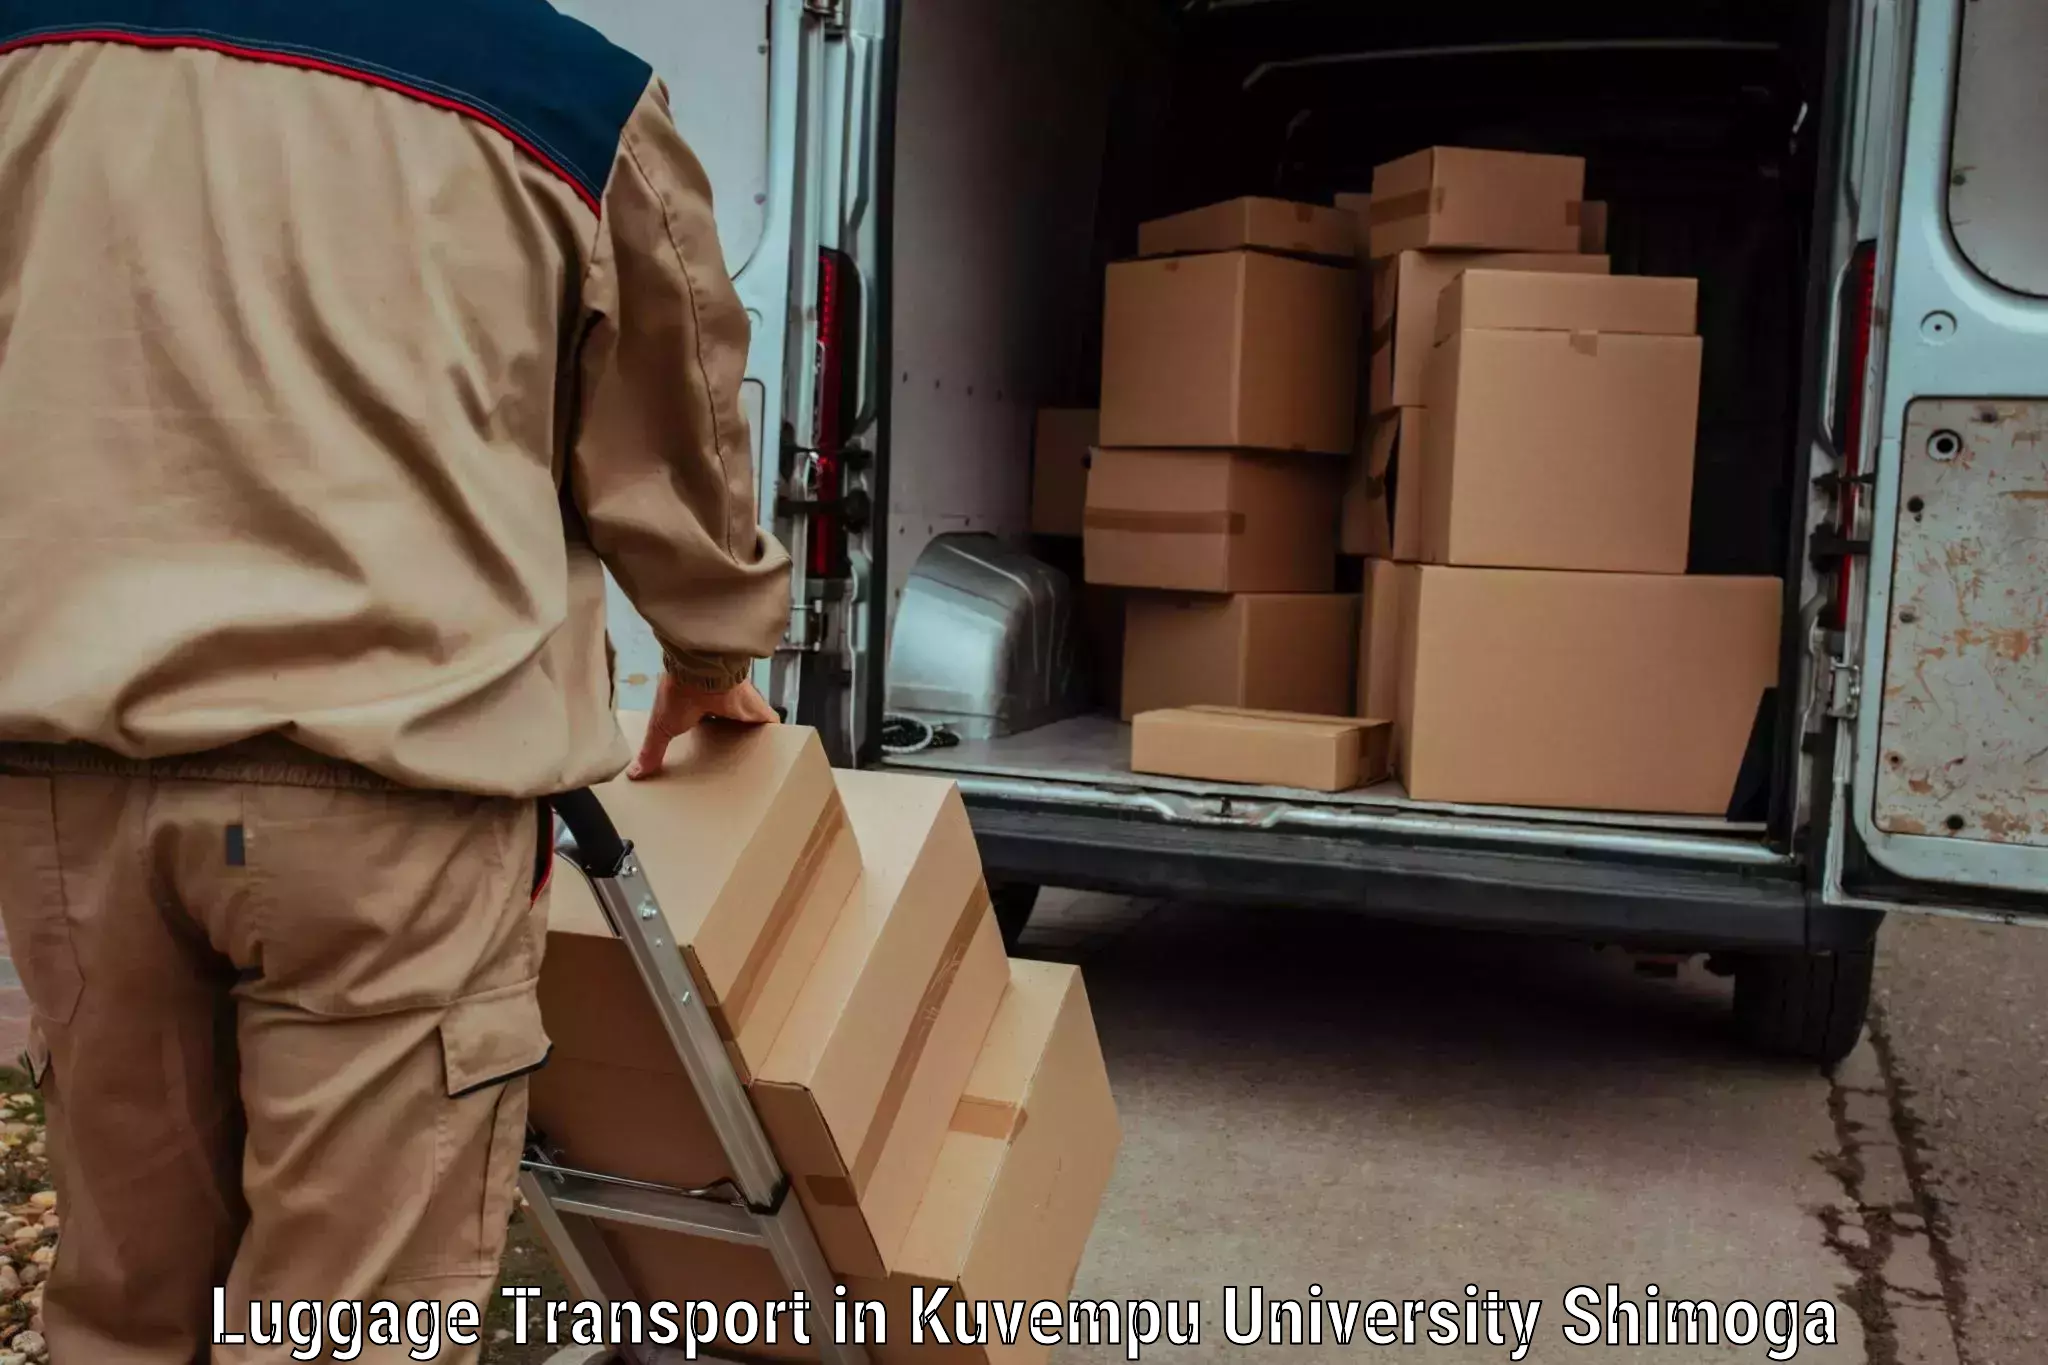 Student luggage transport in Kuvempu University Shimoga